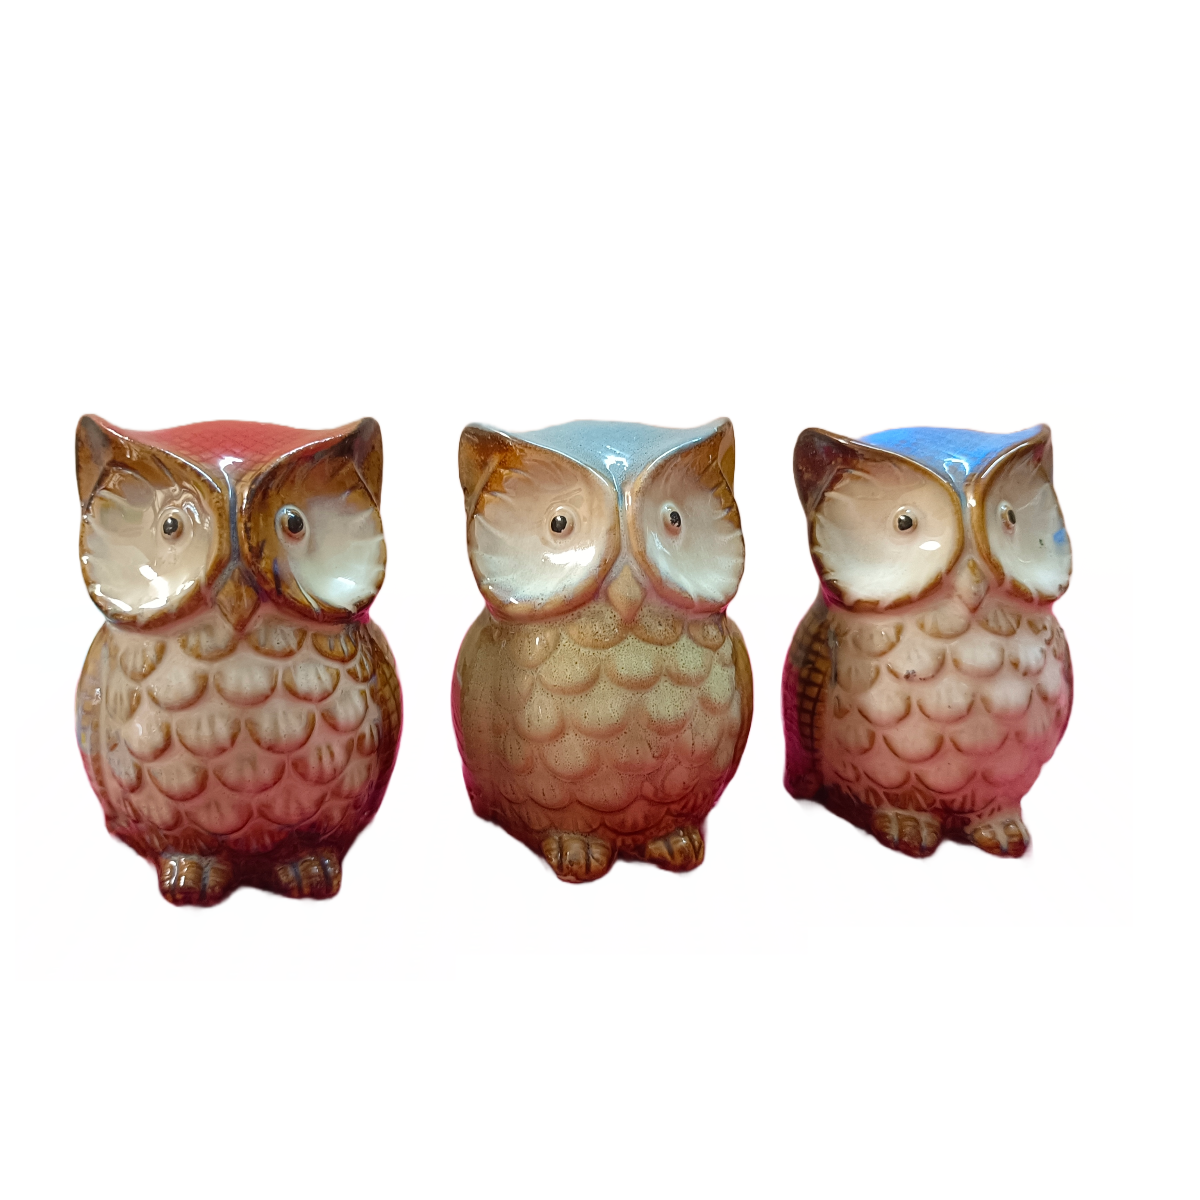 Owls for decor